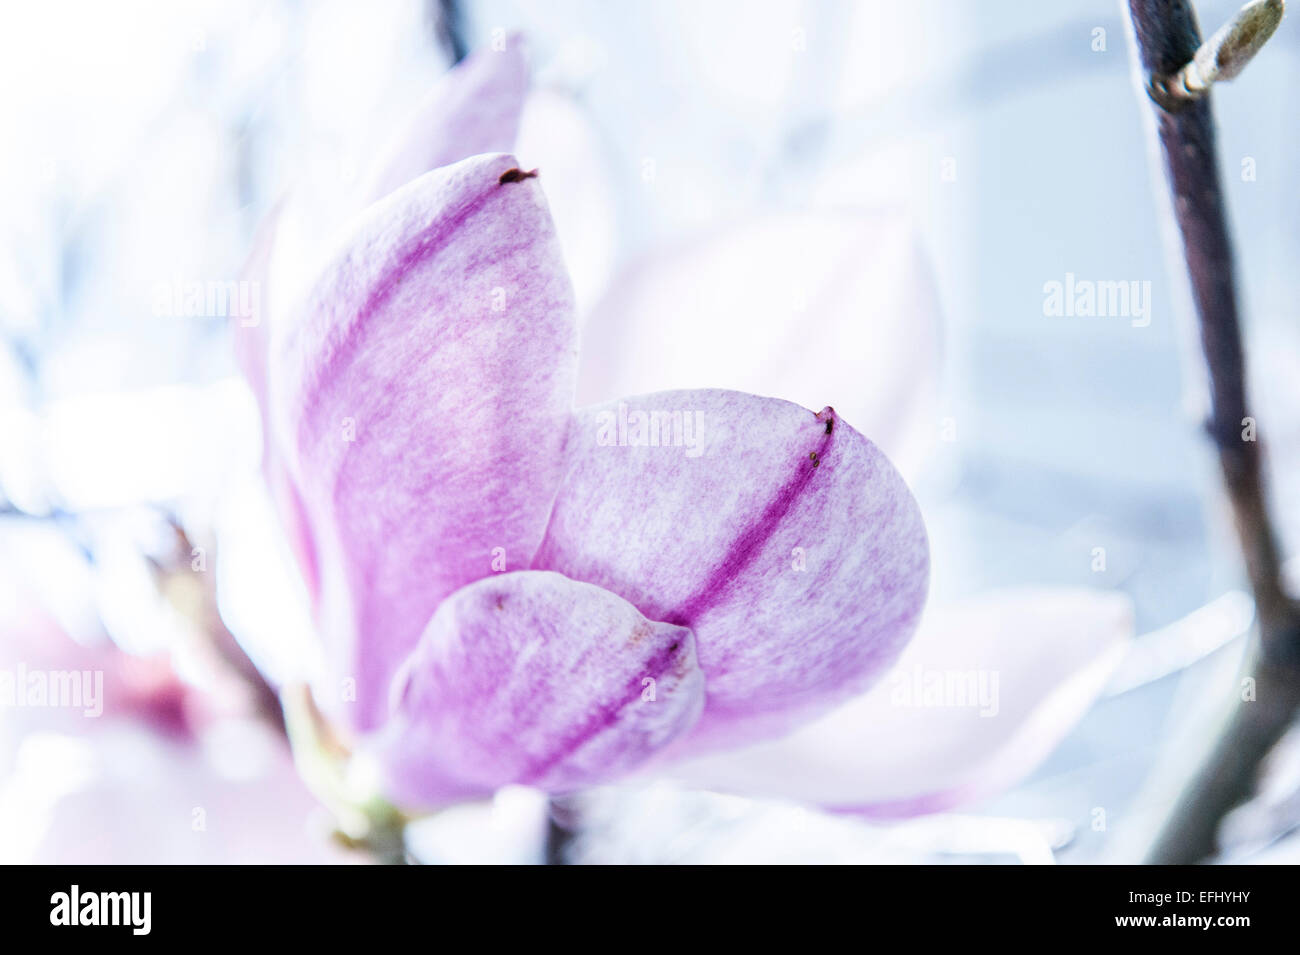 Magnolia lilla immagini e fotografie stock ad alta risoluzione - Alamy